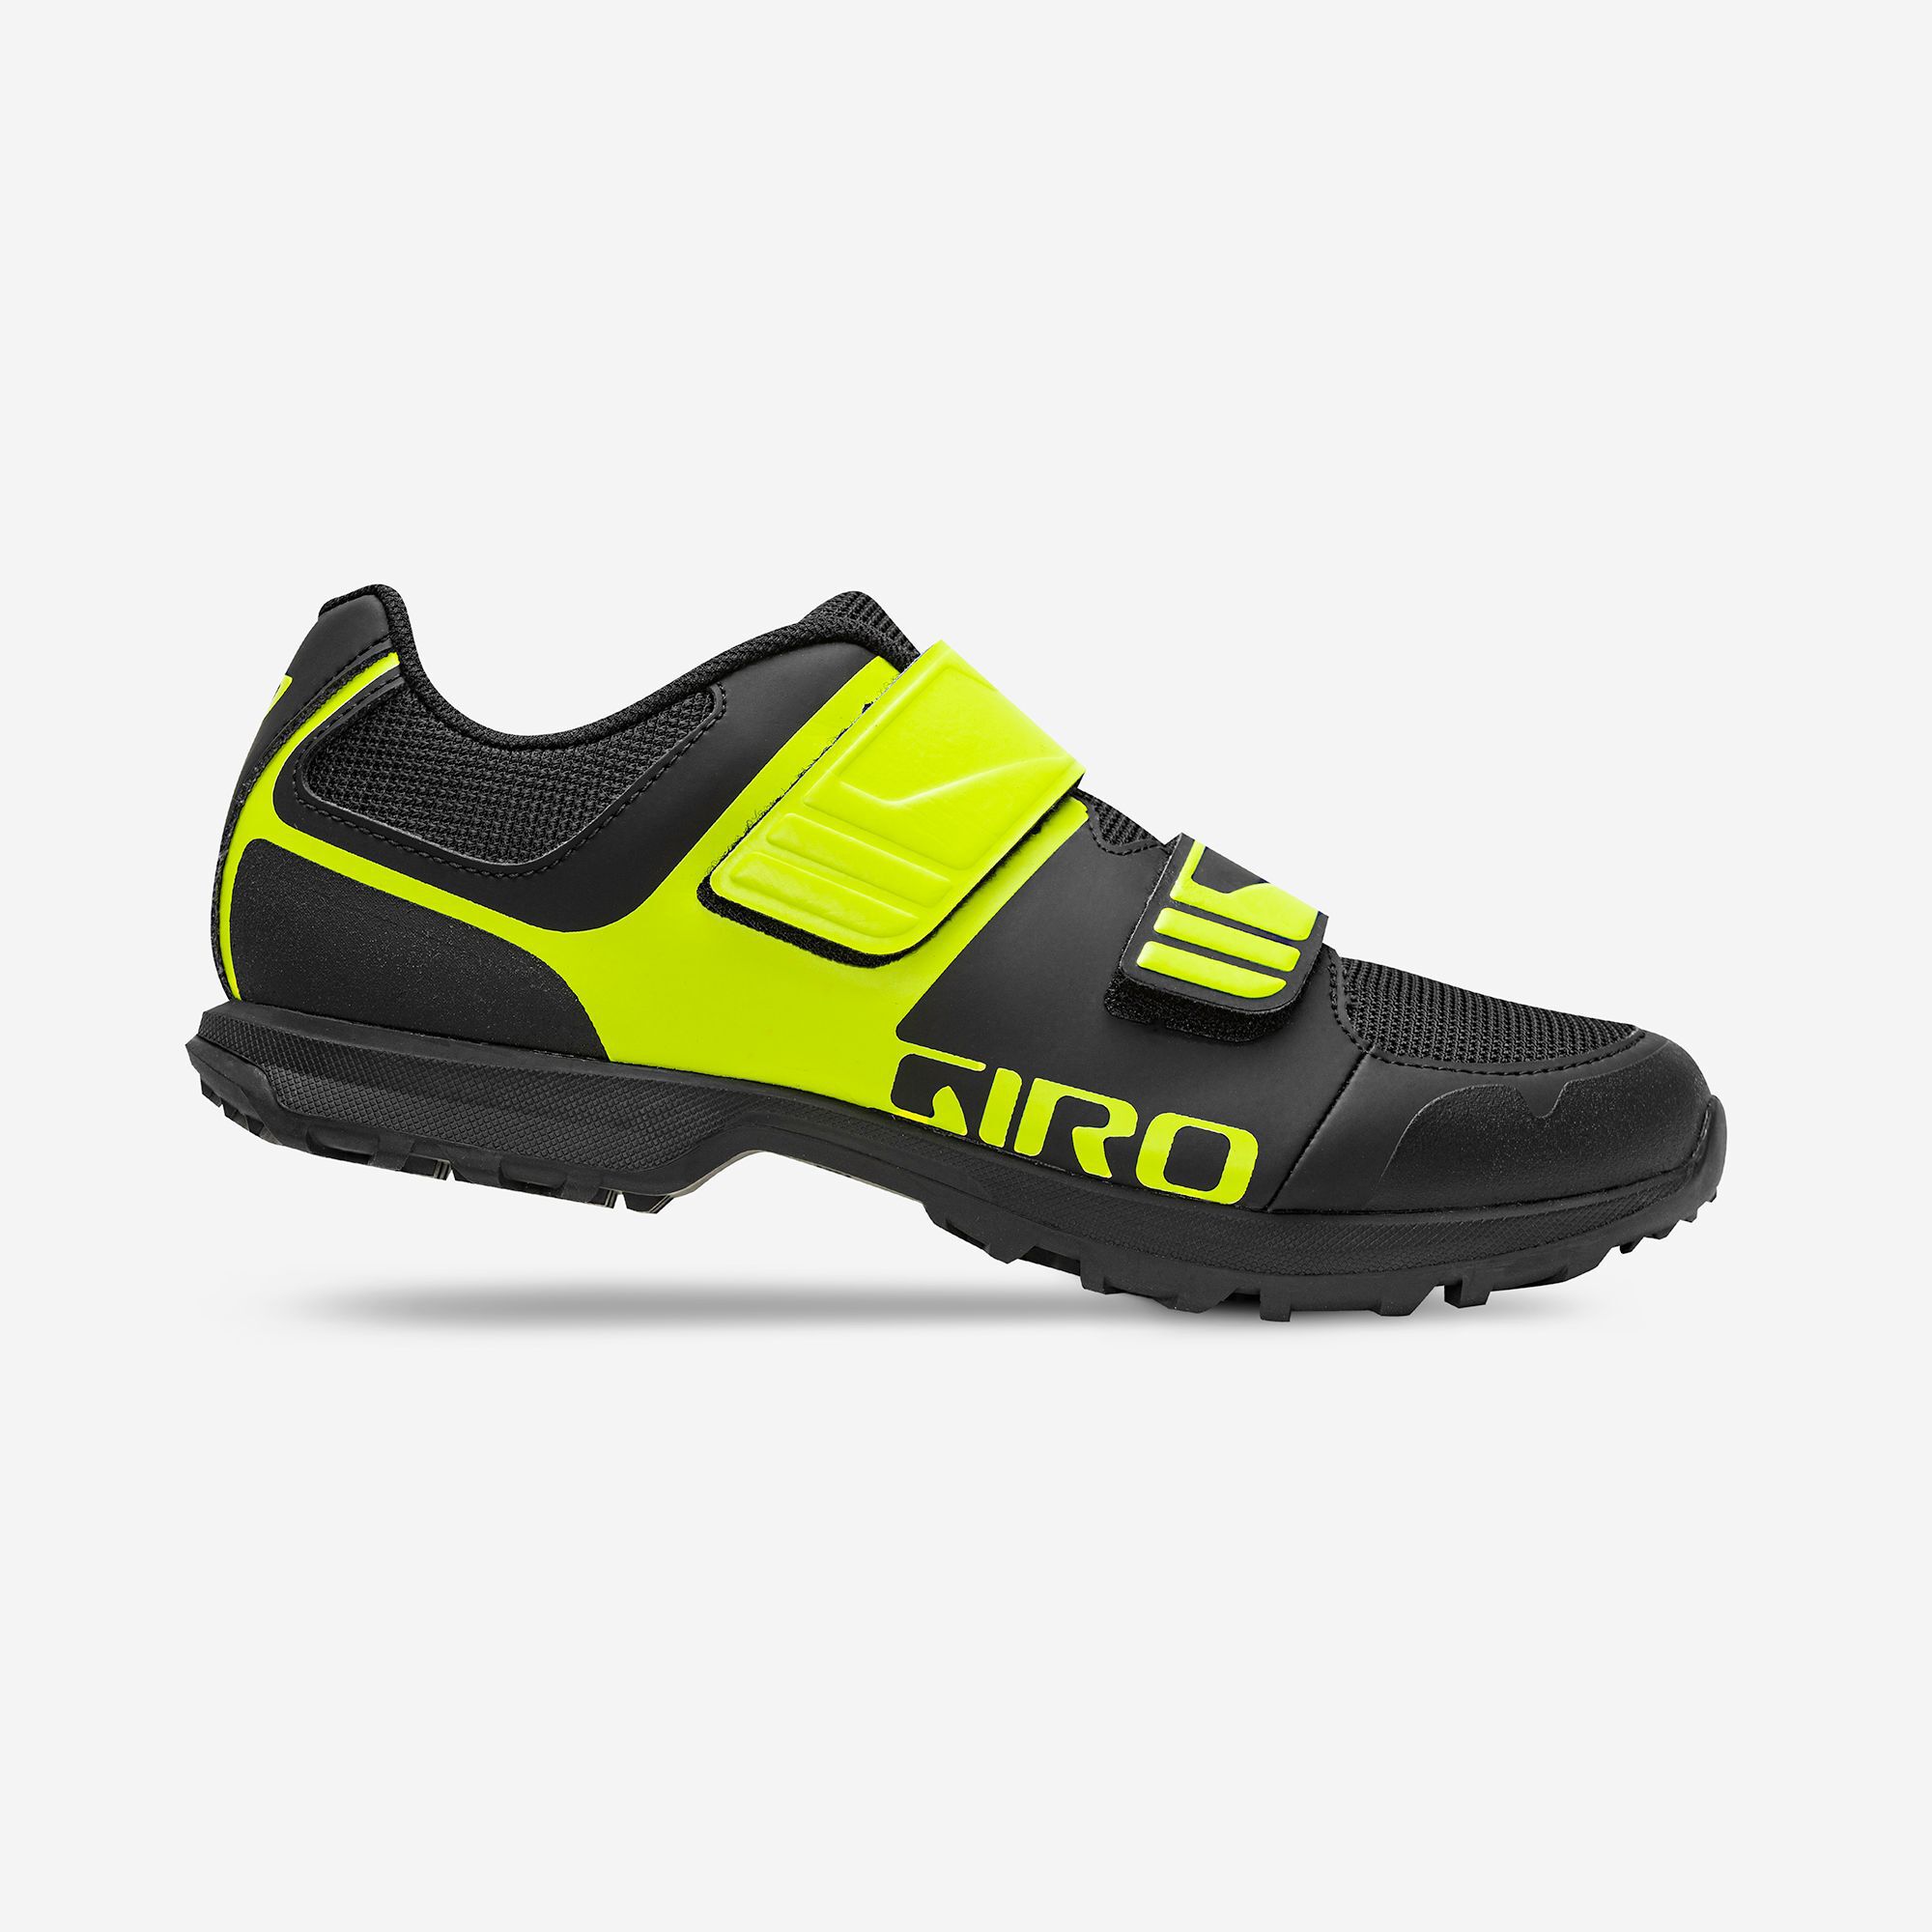 US 7.5 New Giro Carbide R MTB Cycling Shoes Men's Size EU 40 